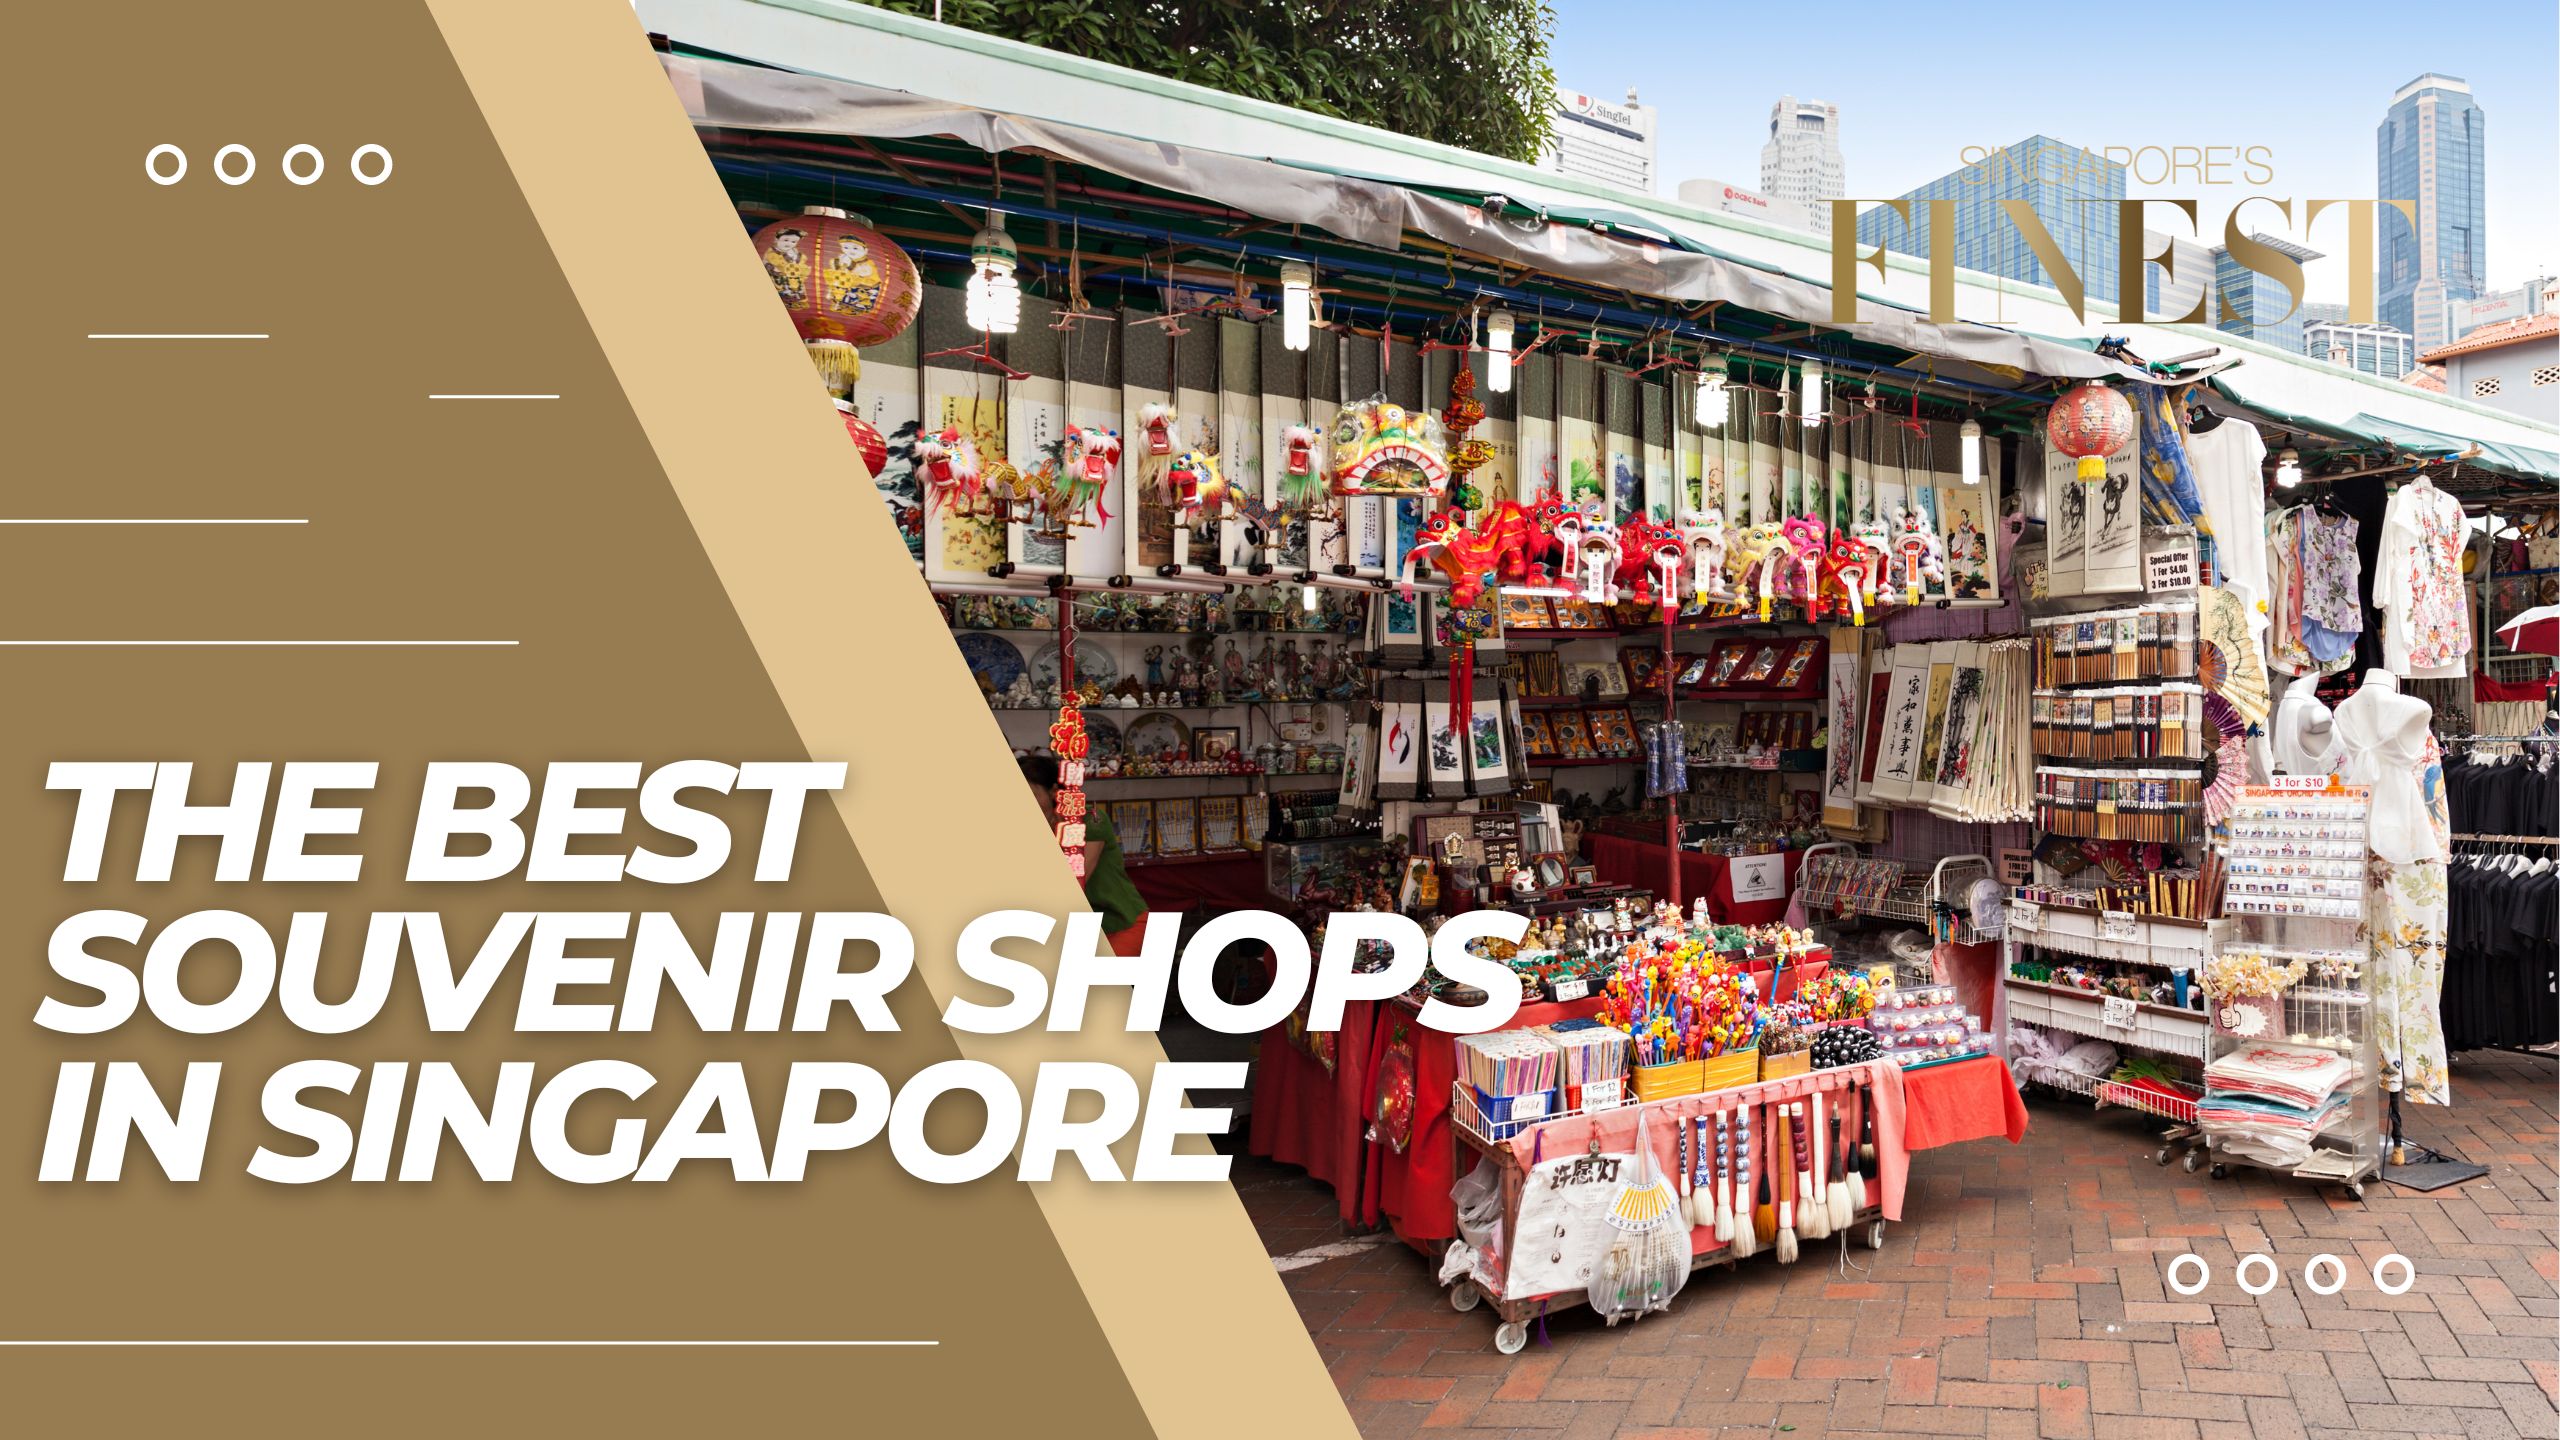 The Finest Souvenir Shops in Singapore